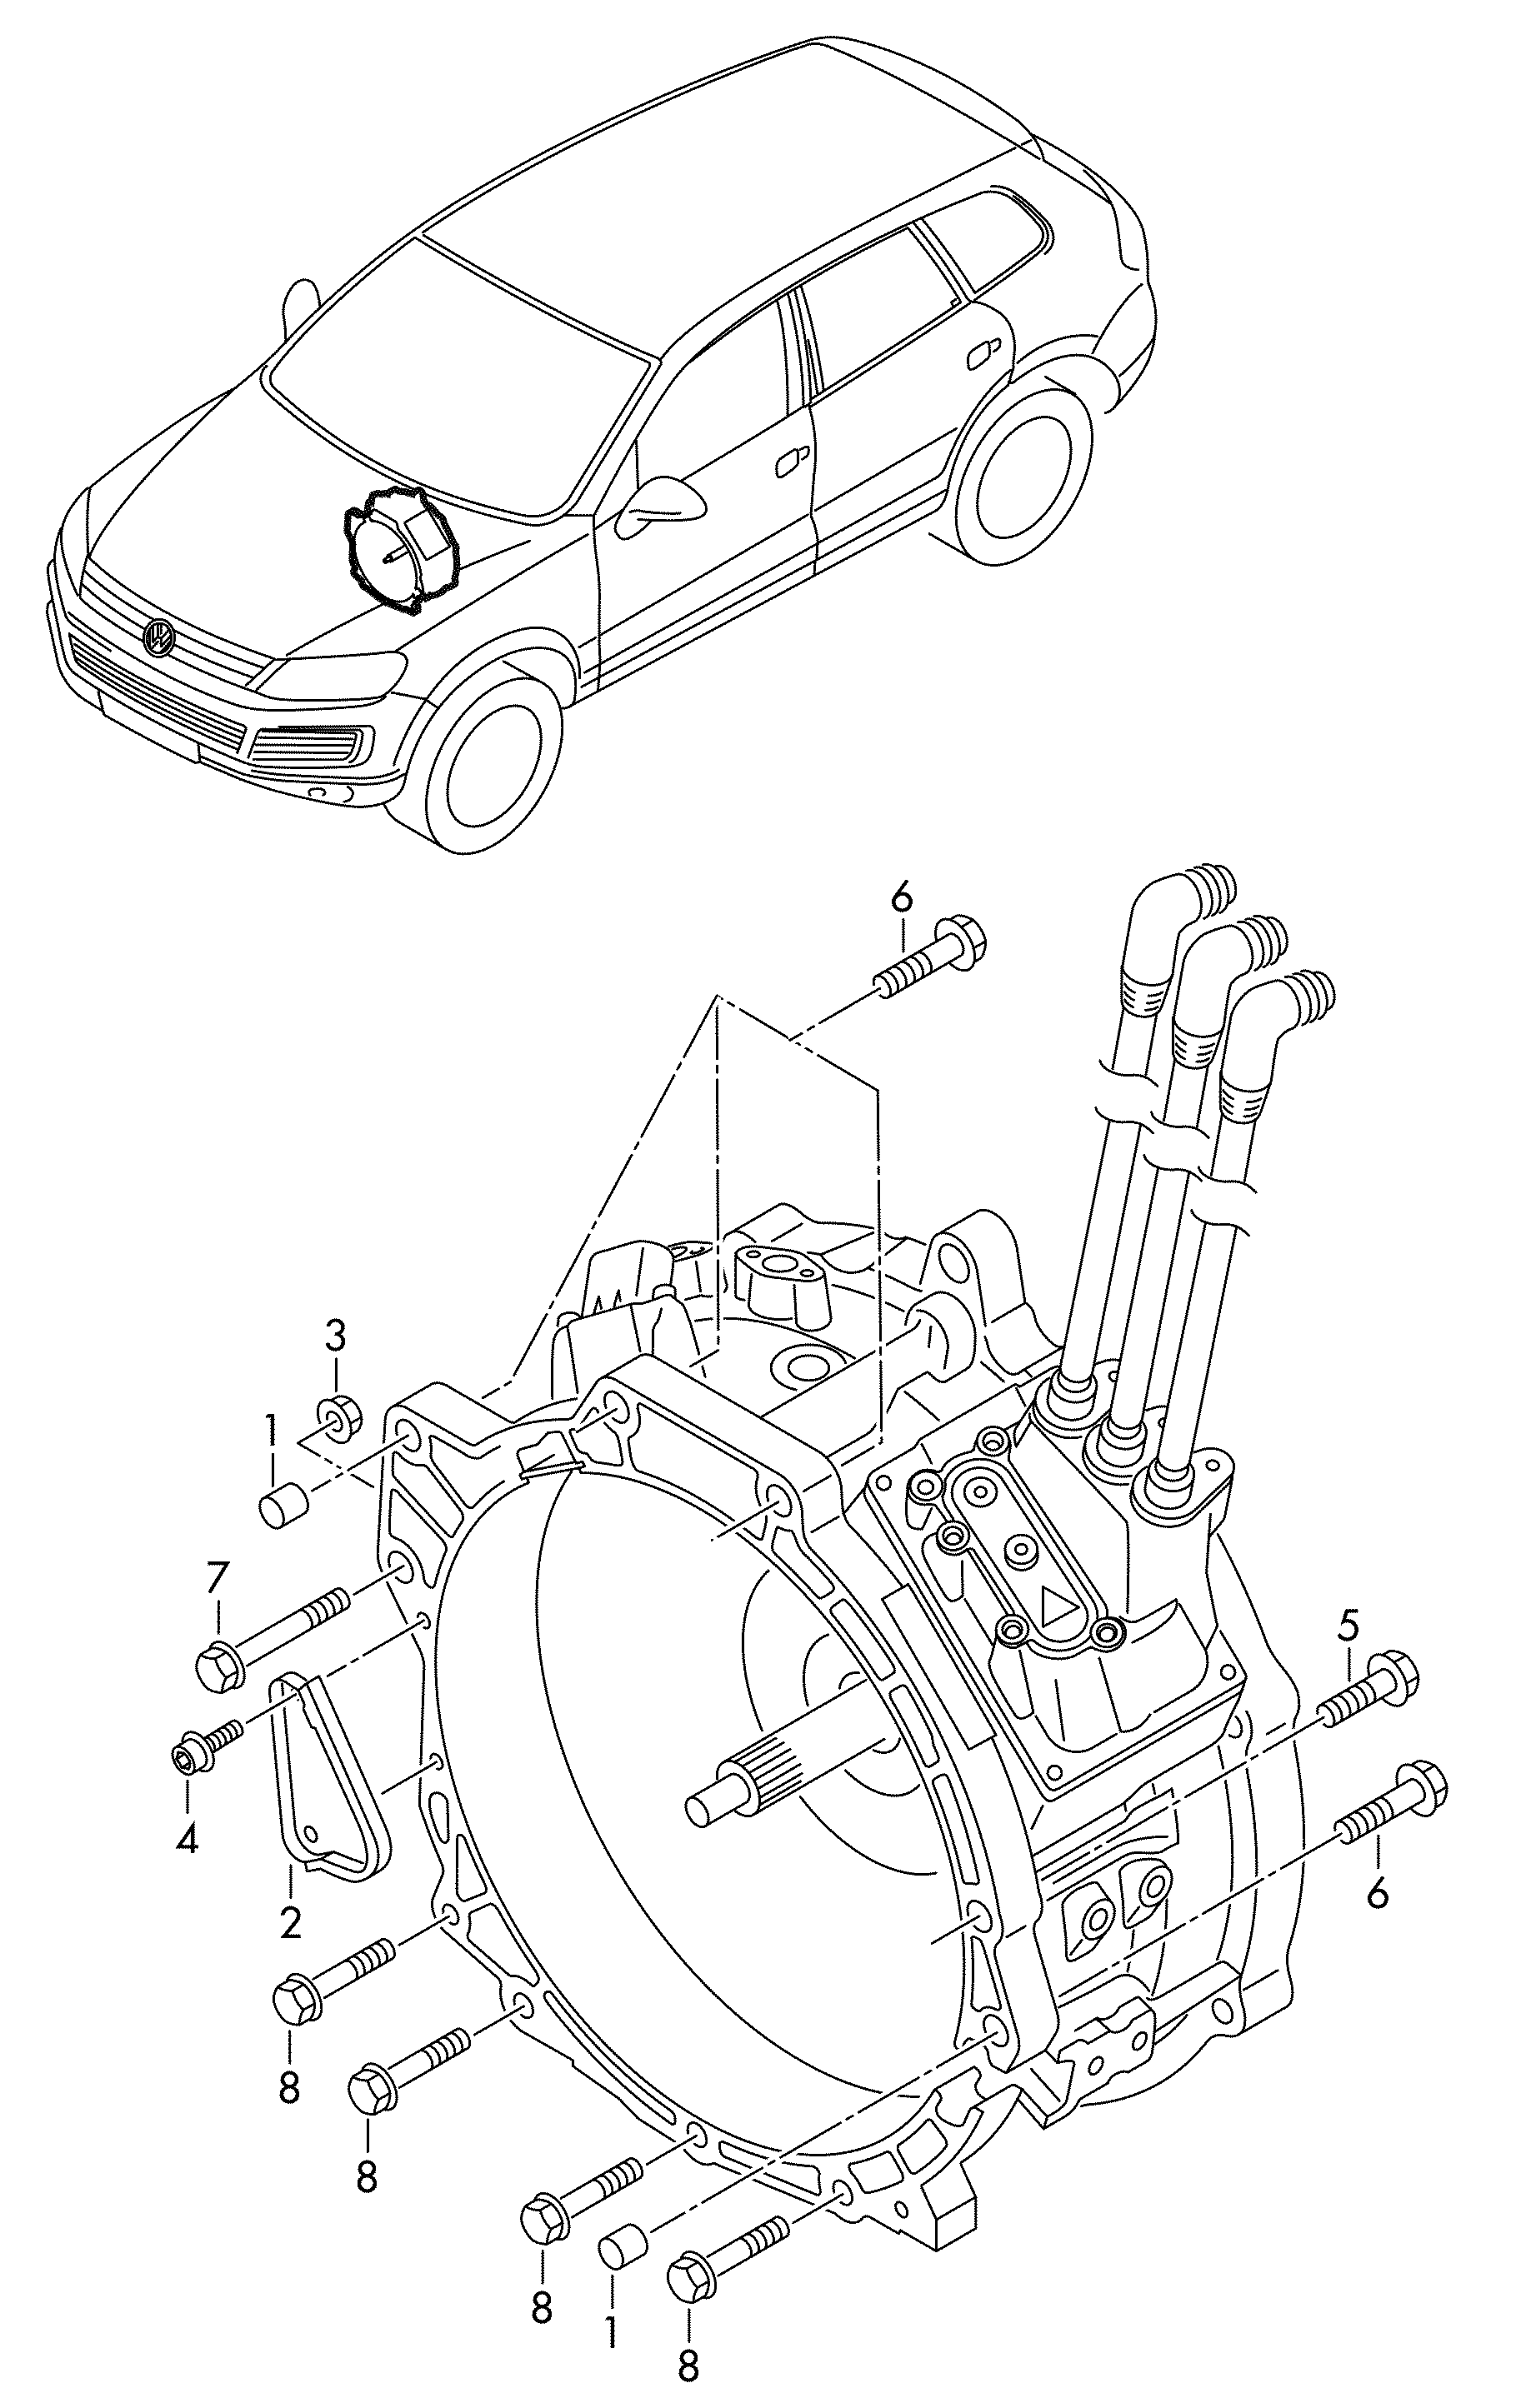 upevnovaci dily; hnaci motor pro elektropohon - Touareg(TOUA)  